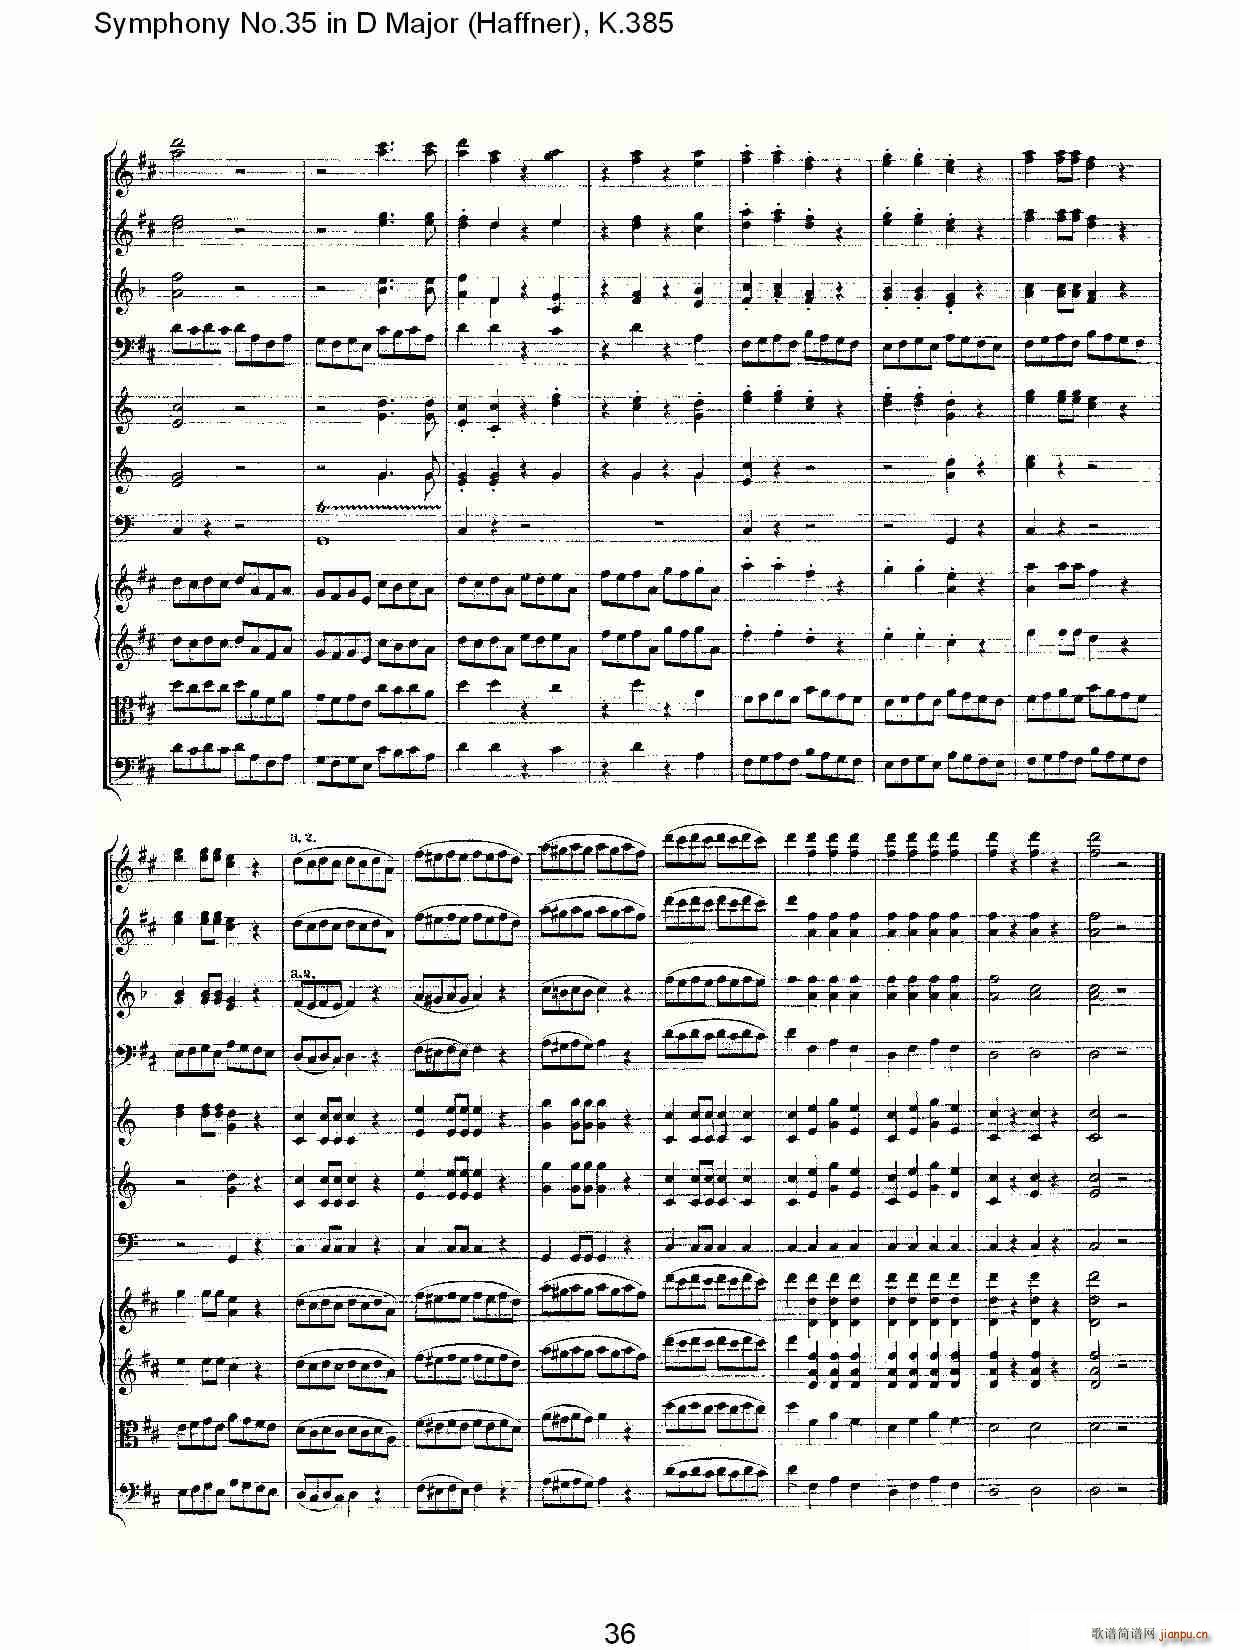 Symphony No.35 in D Major, K.385(ʮּ)36